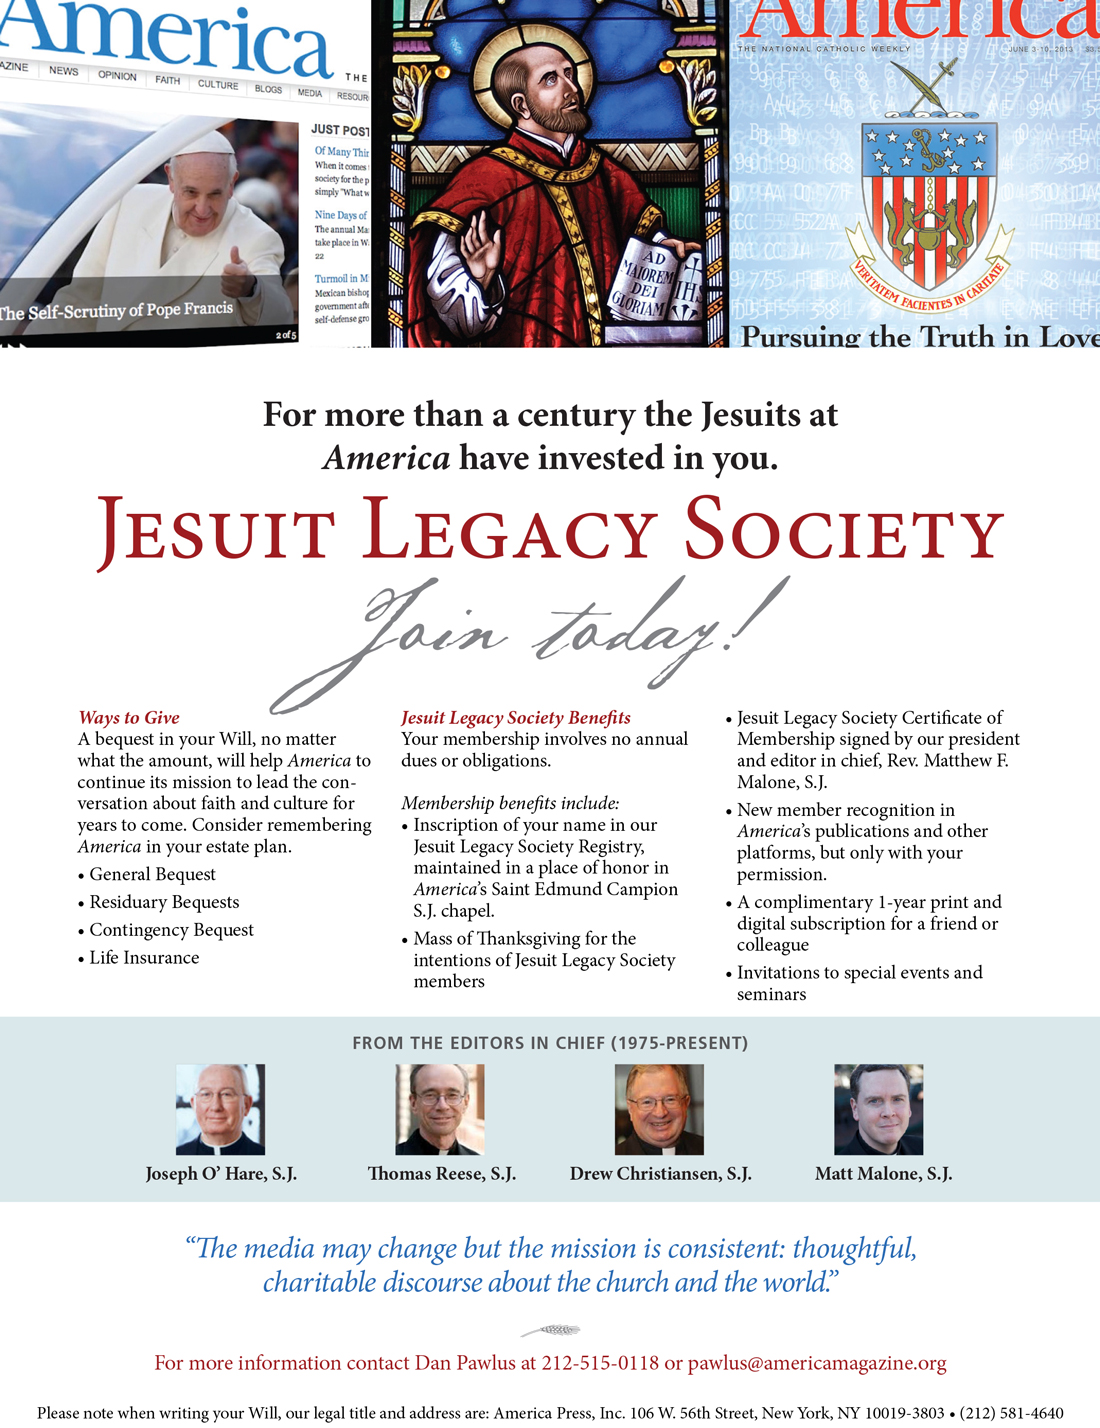 Jesuit Legacy Society Description